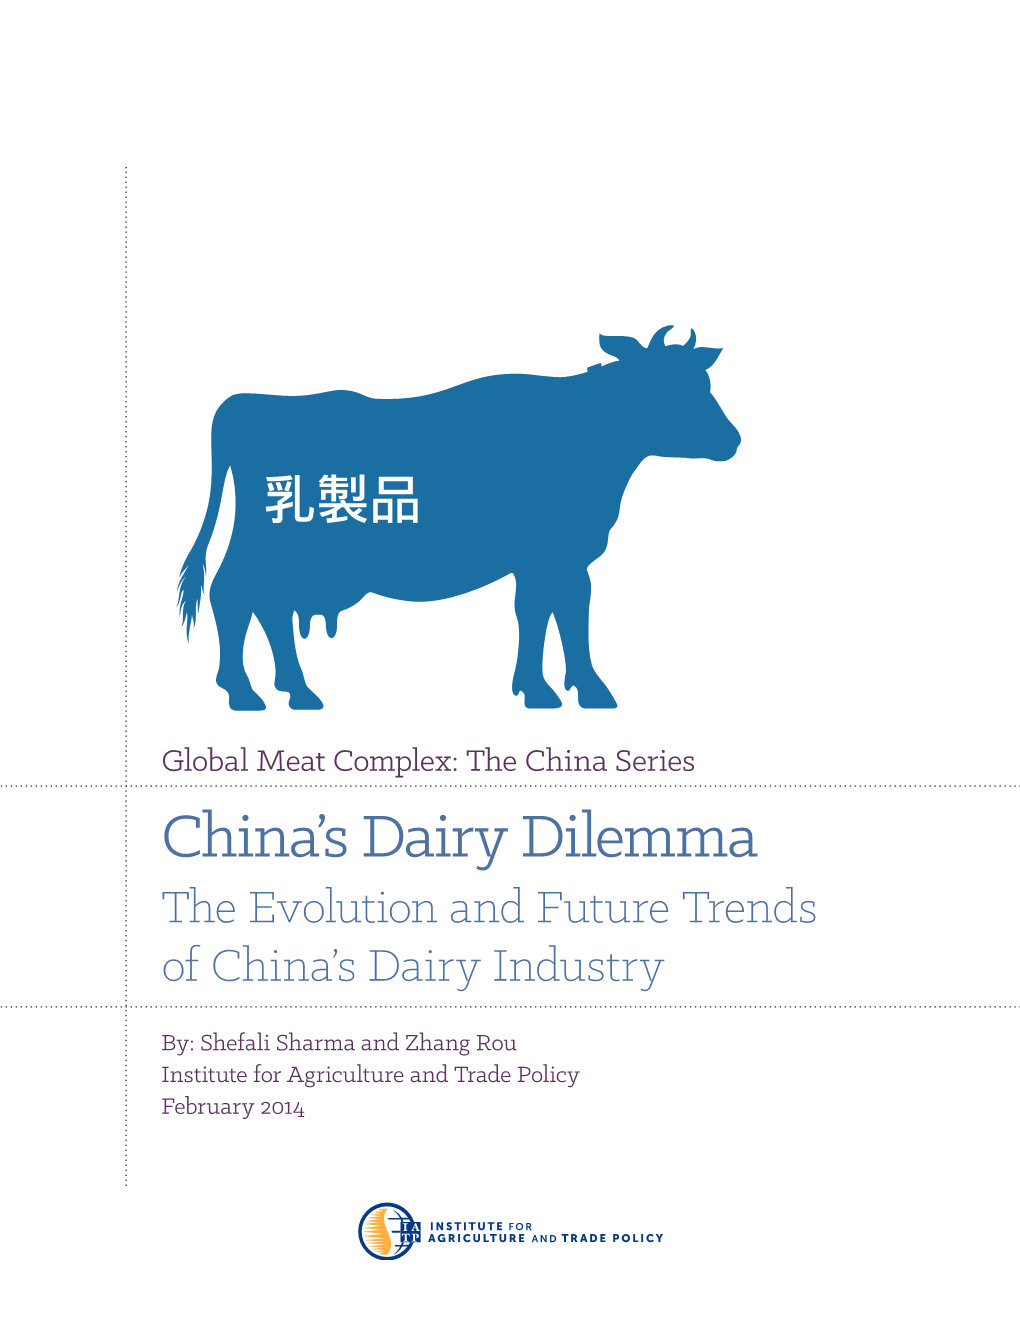 China's Dairy Dilemma